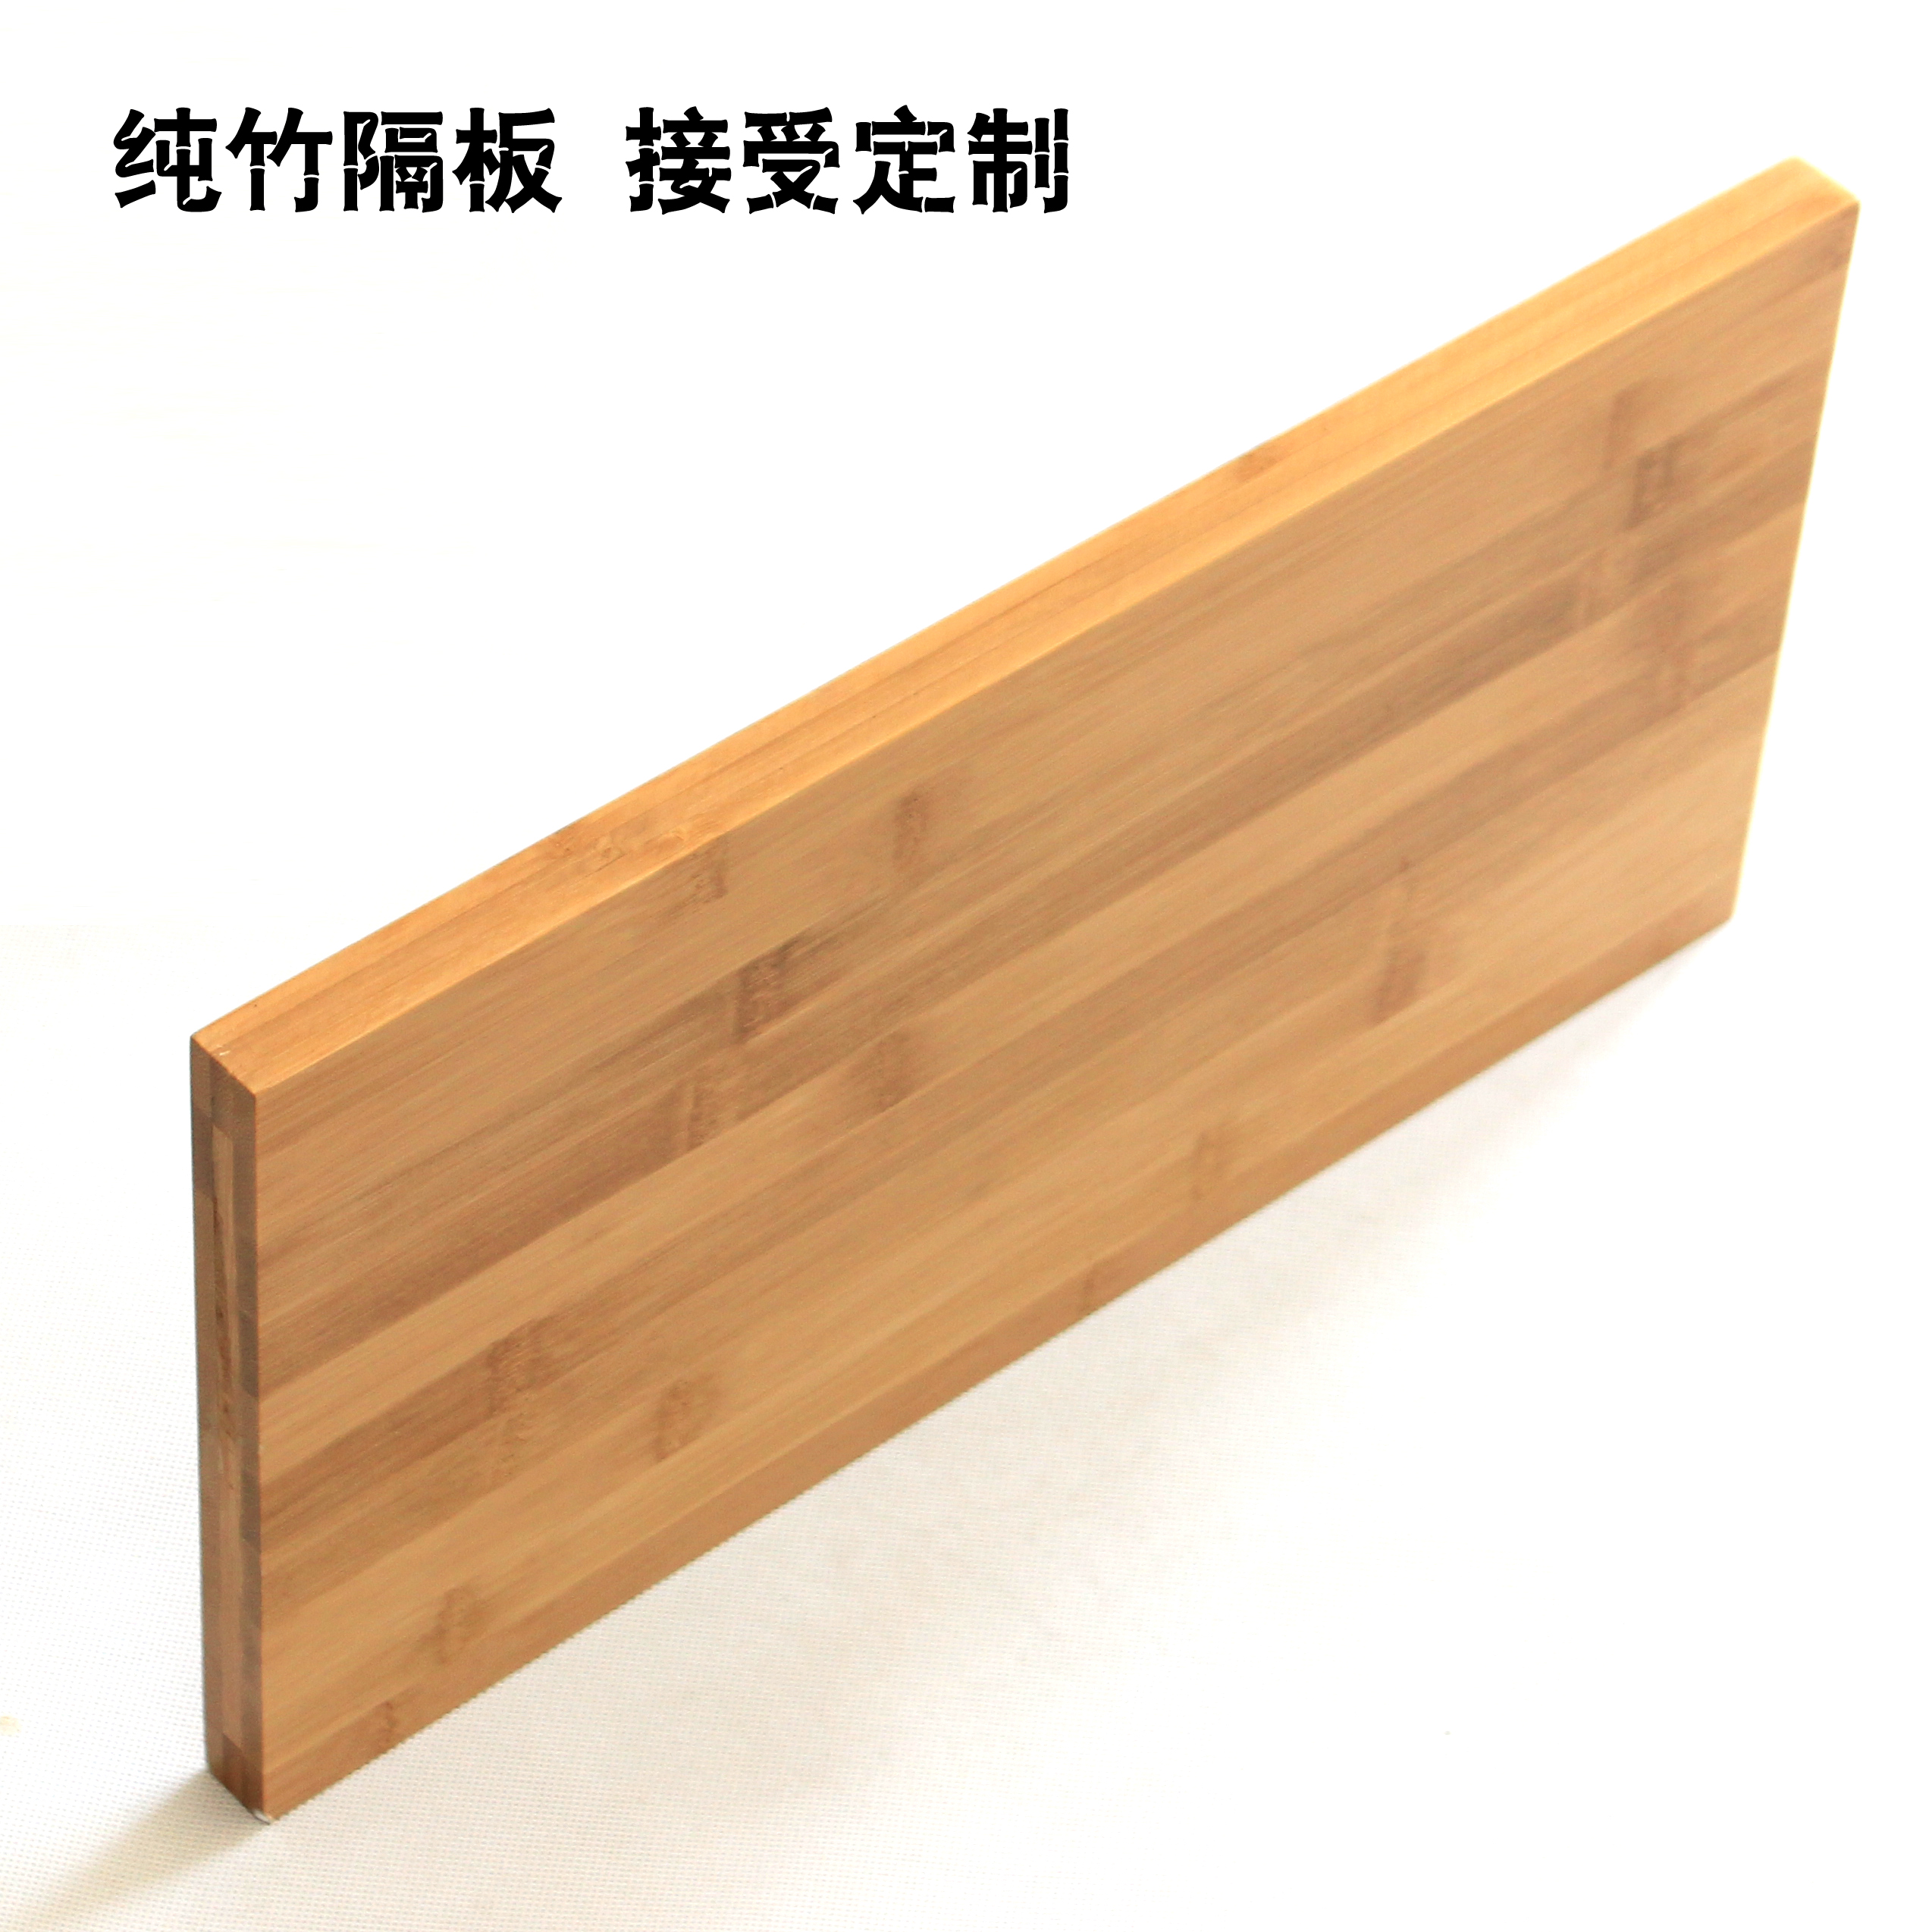 墙上置物架一字隔板搁板壁挂创意顶盒架木板定制衣柜层板电视背景